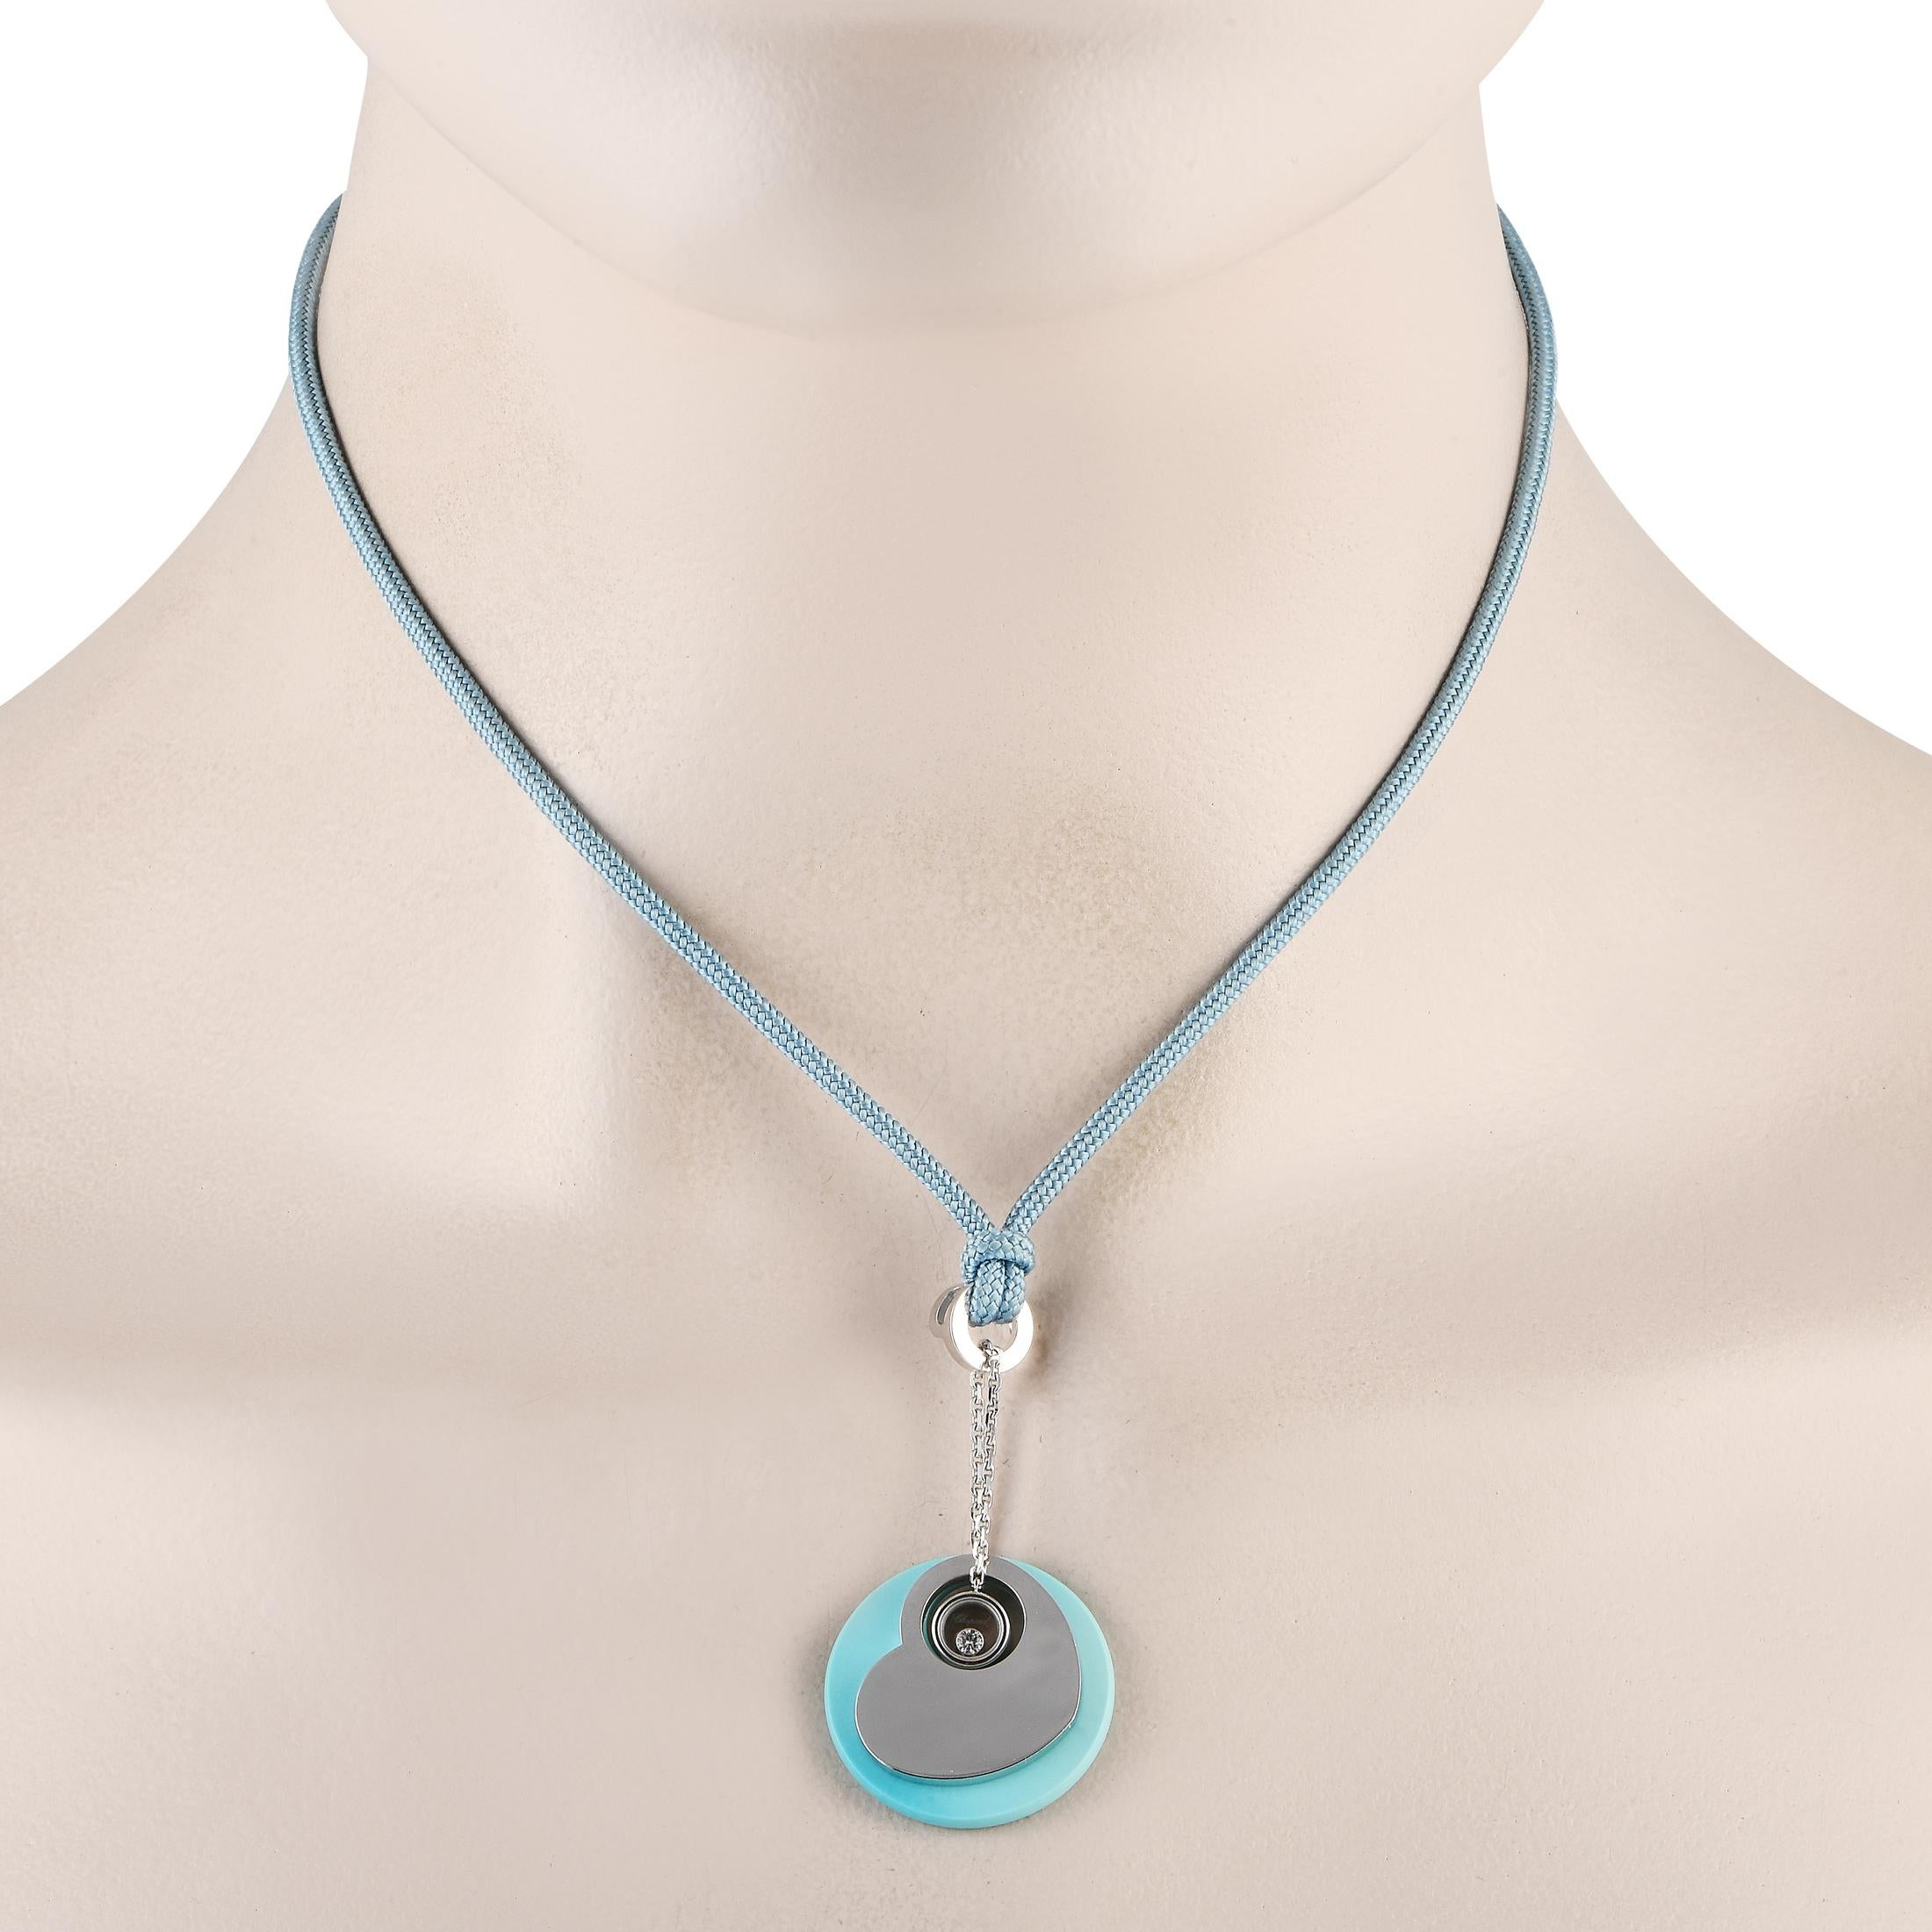 Diese bezaubernde Chopard Türkis-Halskette ist ein auffälliges Schmuckstück, das Ihre Fantasie immer wieder aufs Neue anregen wird. Aufgehängt an einer 15 blauen Schnur, finden Sie einen leuchtend blauen Anhänger Messung 1 Runde, die von einem 18K